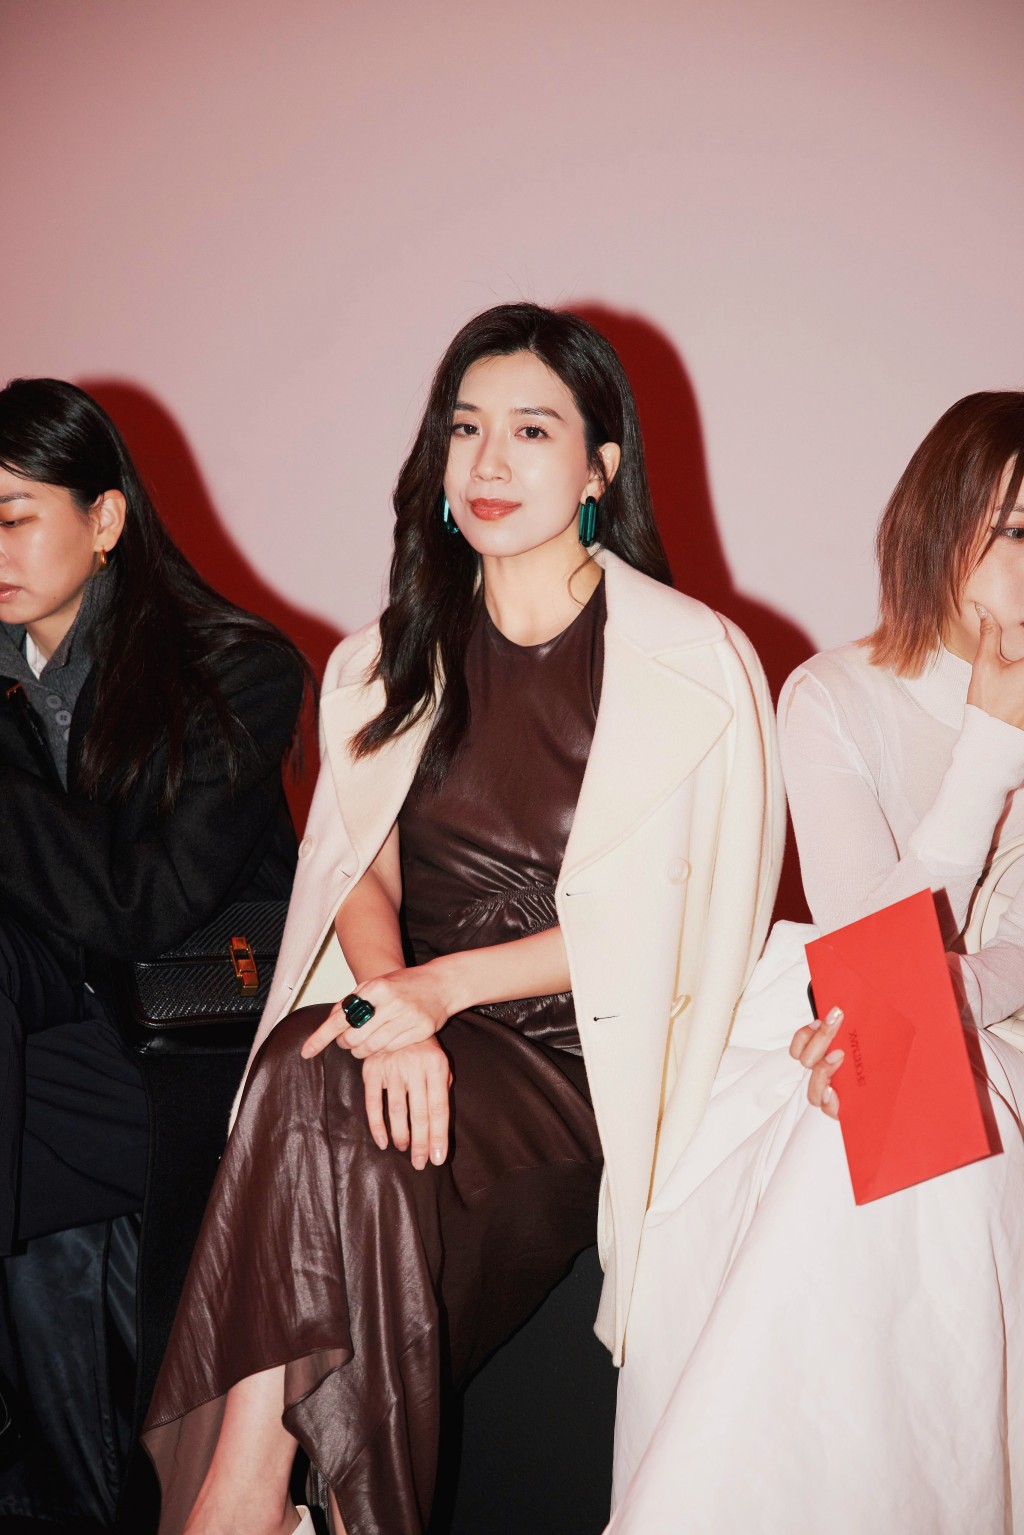 黄智雯近日获时尚品牌邀请到意大利出席时装骚。